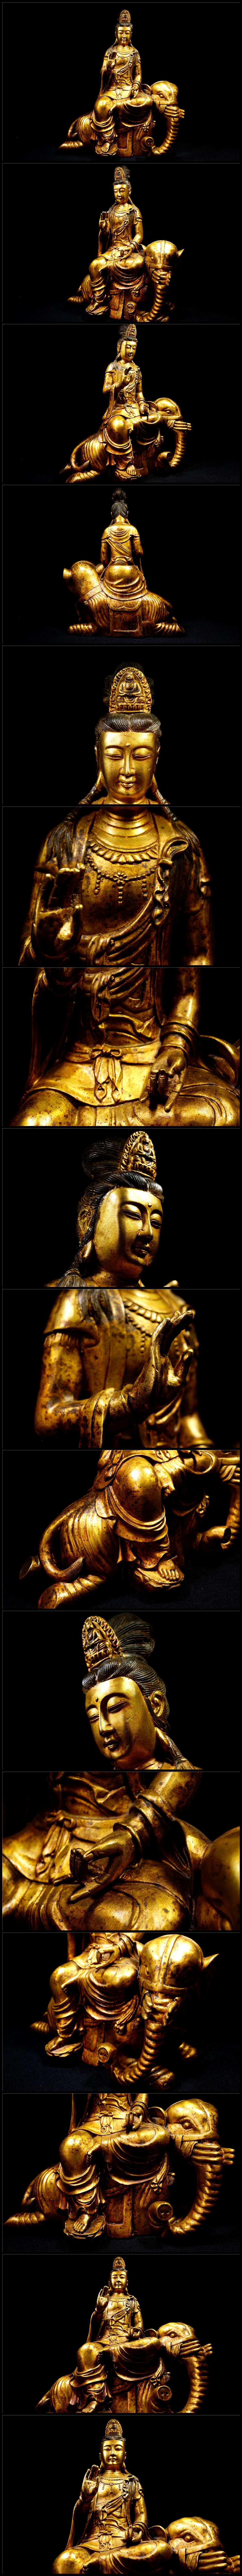 ビジネス金銅細工 仏教 大迫力文殊菩造像高彫 鎮宅 開運置物 極上質 高さ約40cm 仏像